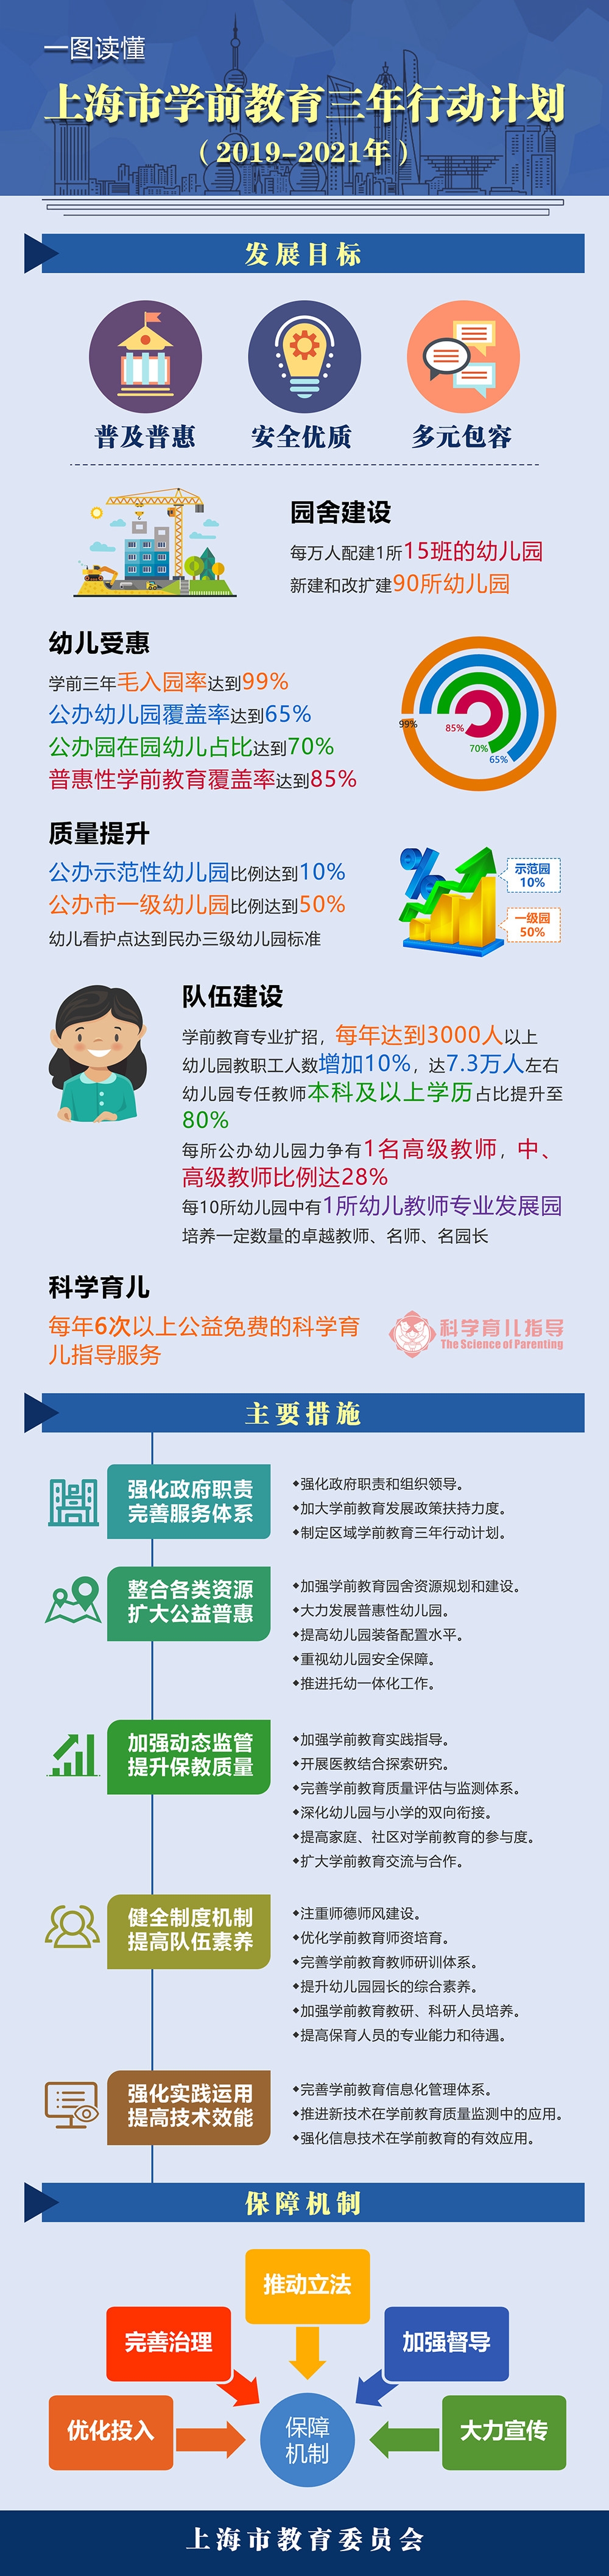 一图读懂《上海市学前教育三年行动计划（2019-2021年）》